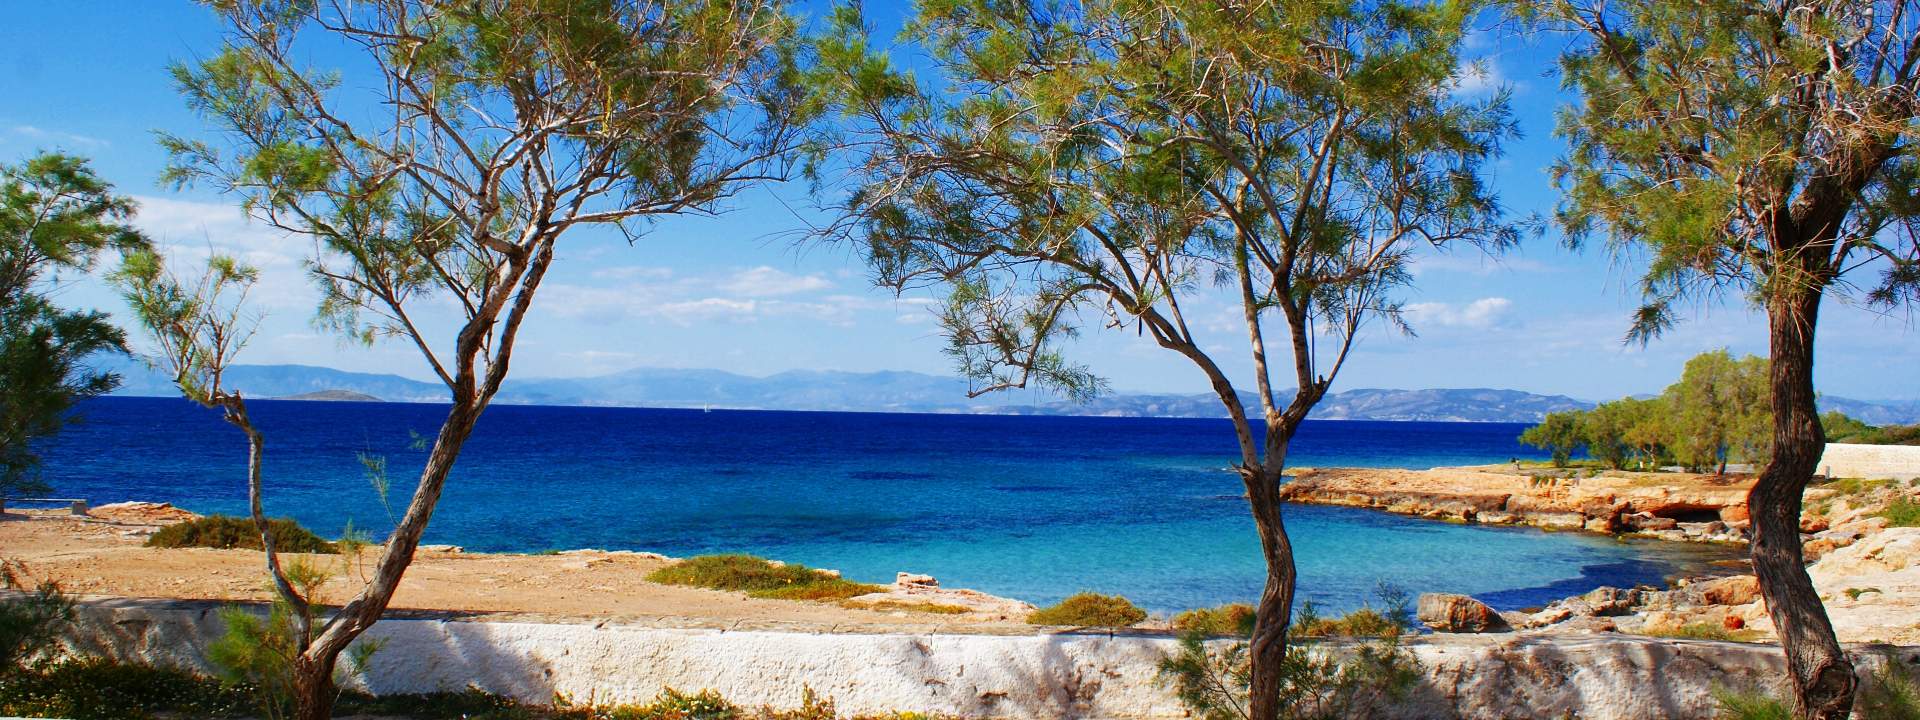 Dal Golfo Saronico al Peloponneso: scopri le più belle isole greche